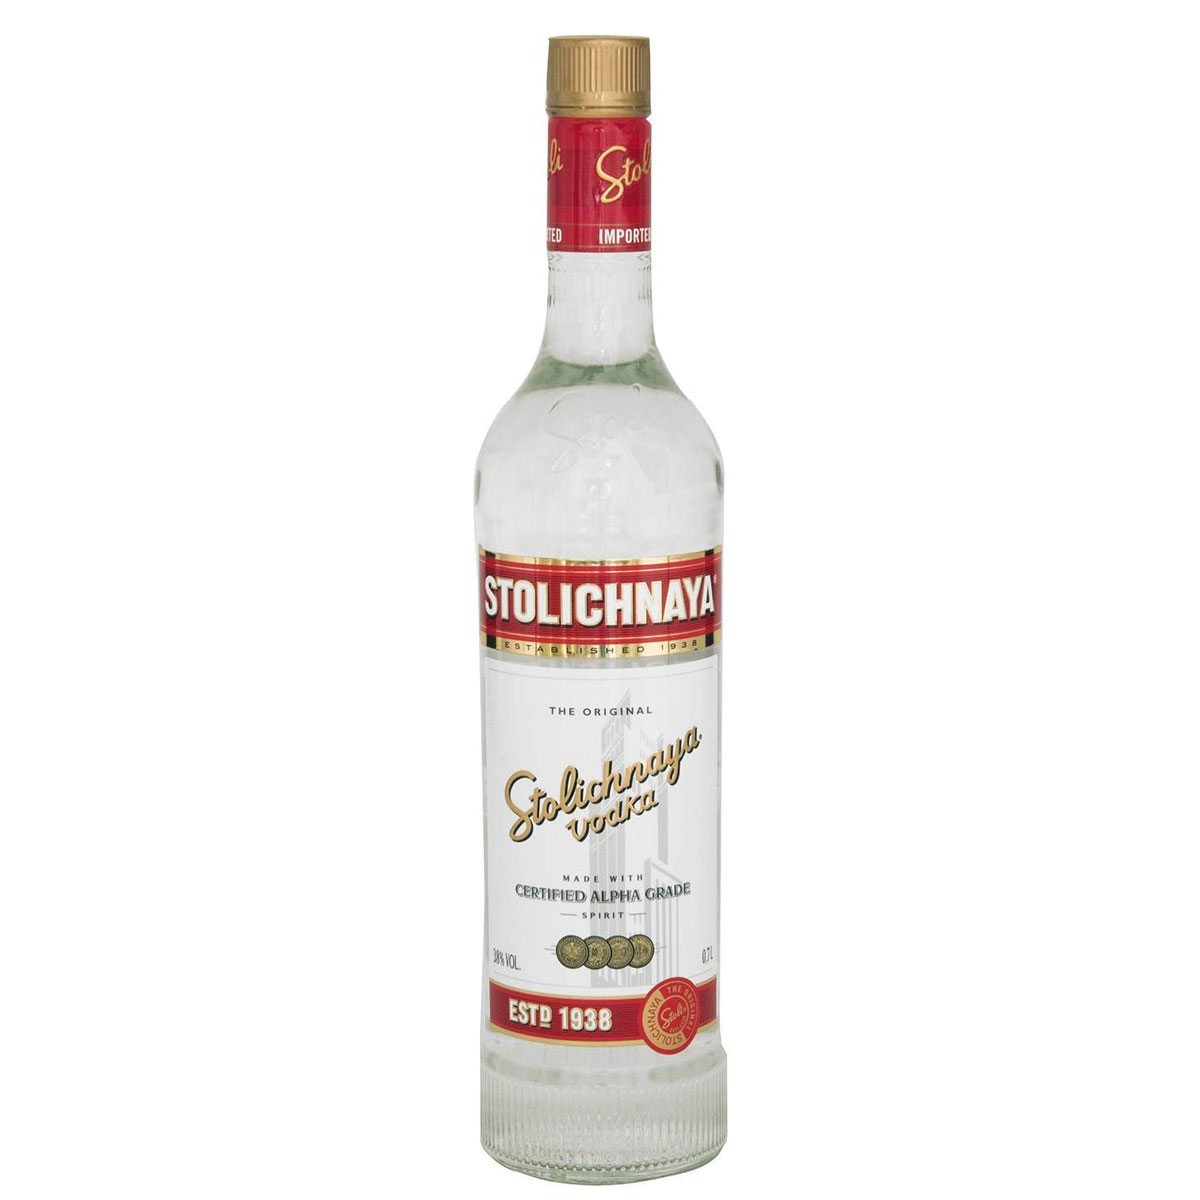 a bottle of stolichnaya vodka